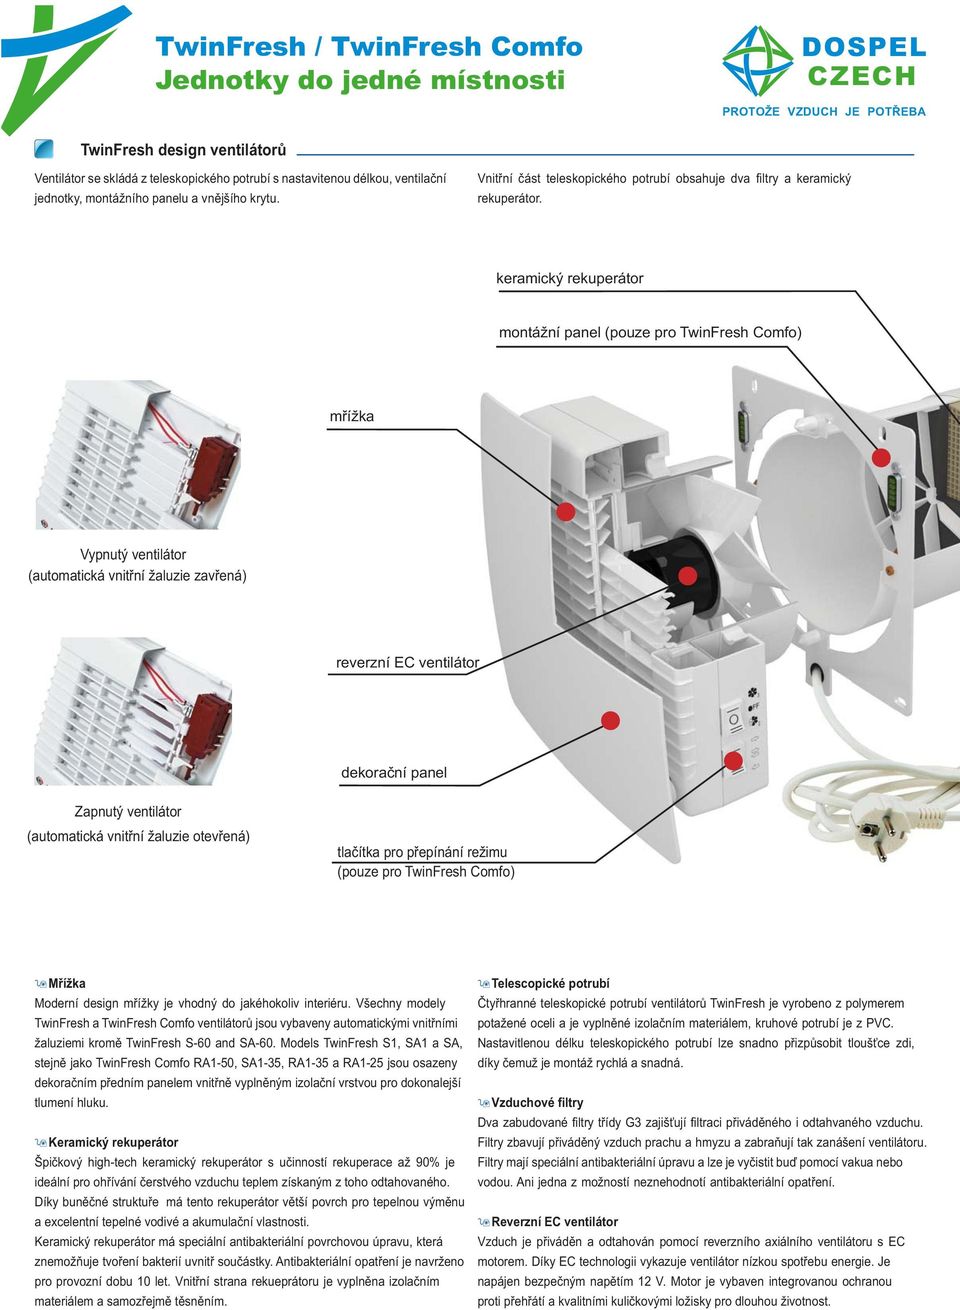 keramický rekuperátor montážní panel (pouze pro TwinFresh Comfo) mřížka Vypnutý ventilátor (automatická vnitřní žaluzie zavřená) reverzní EC ventilátor dekorační panel Zapnutý ventilátor (automatická